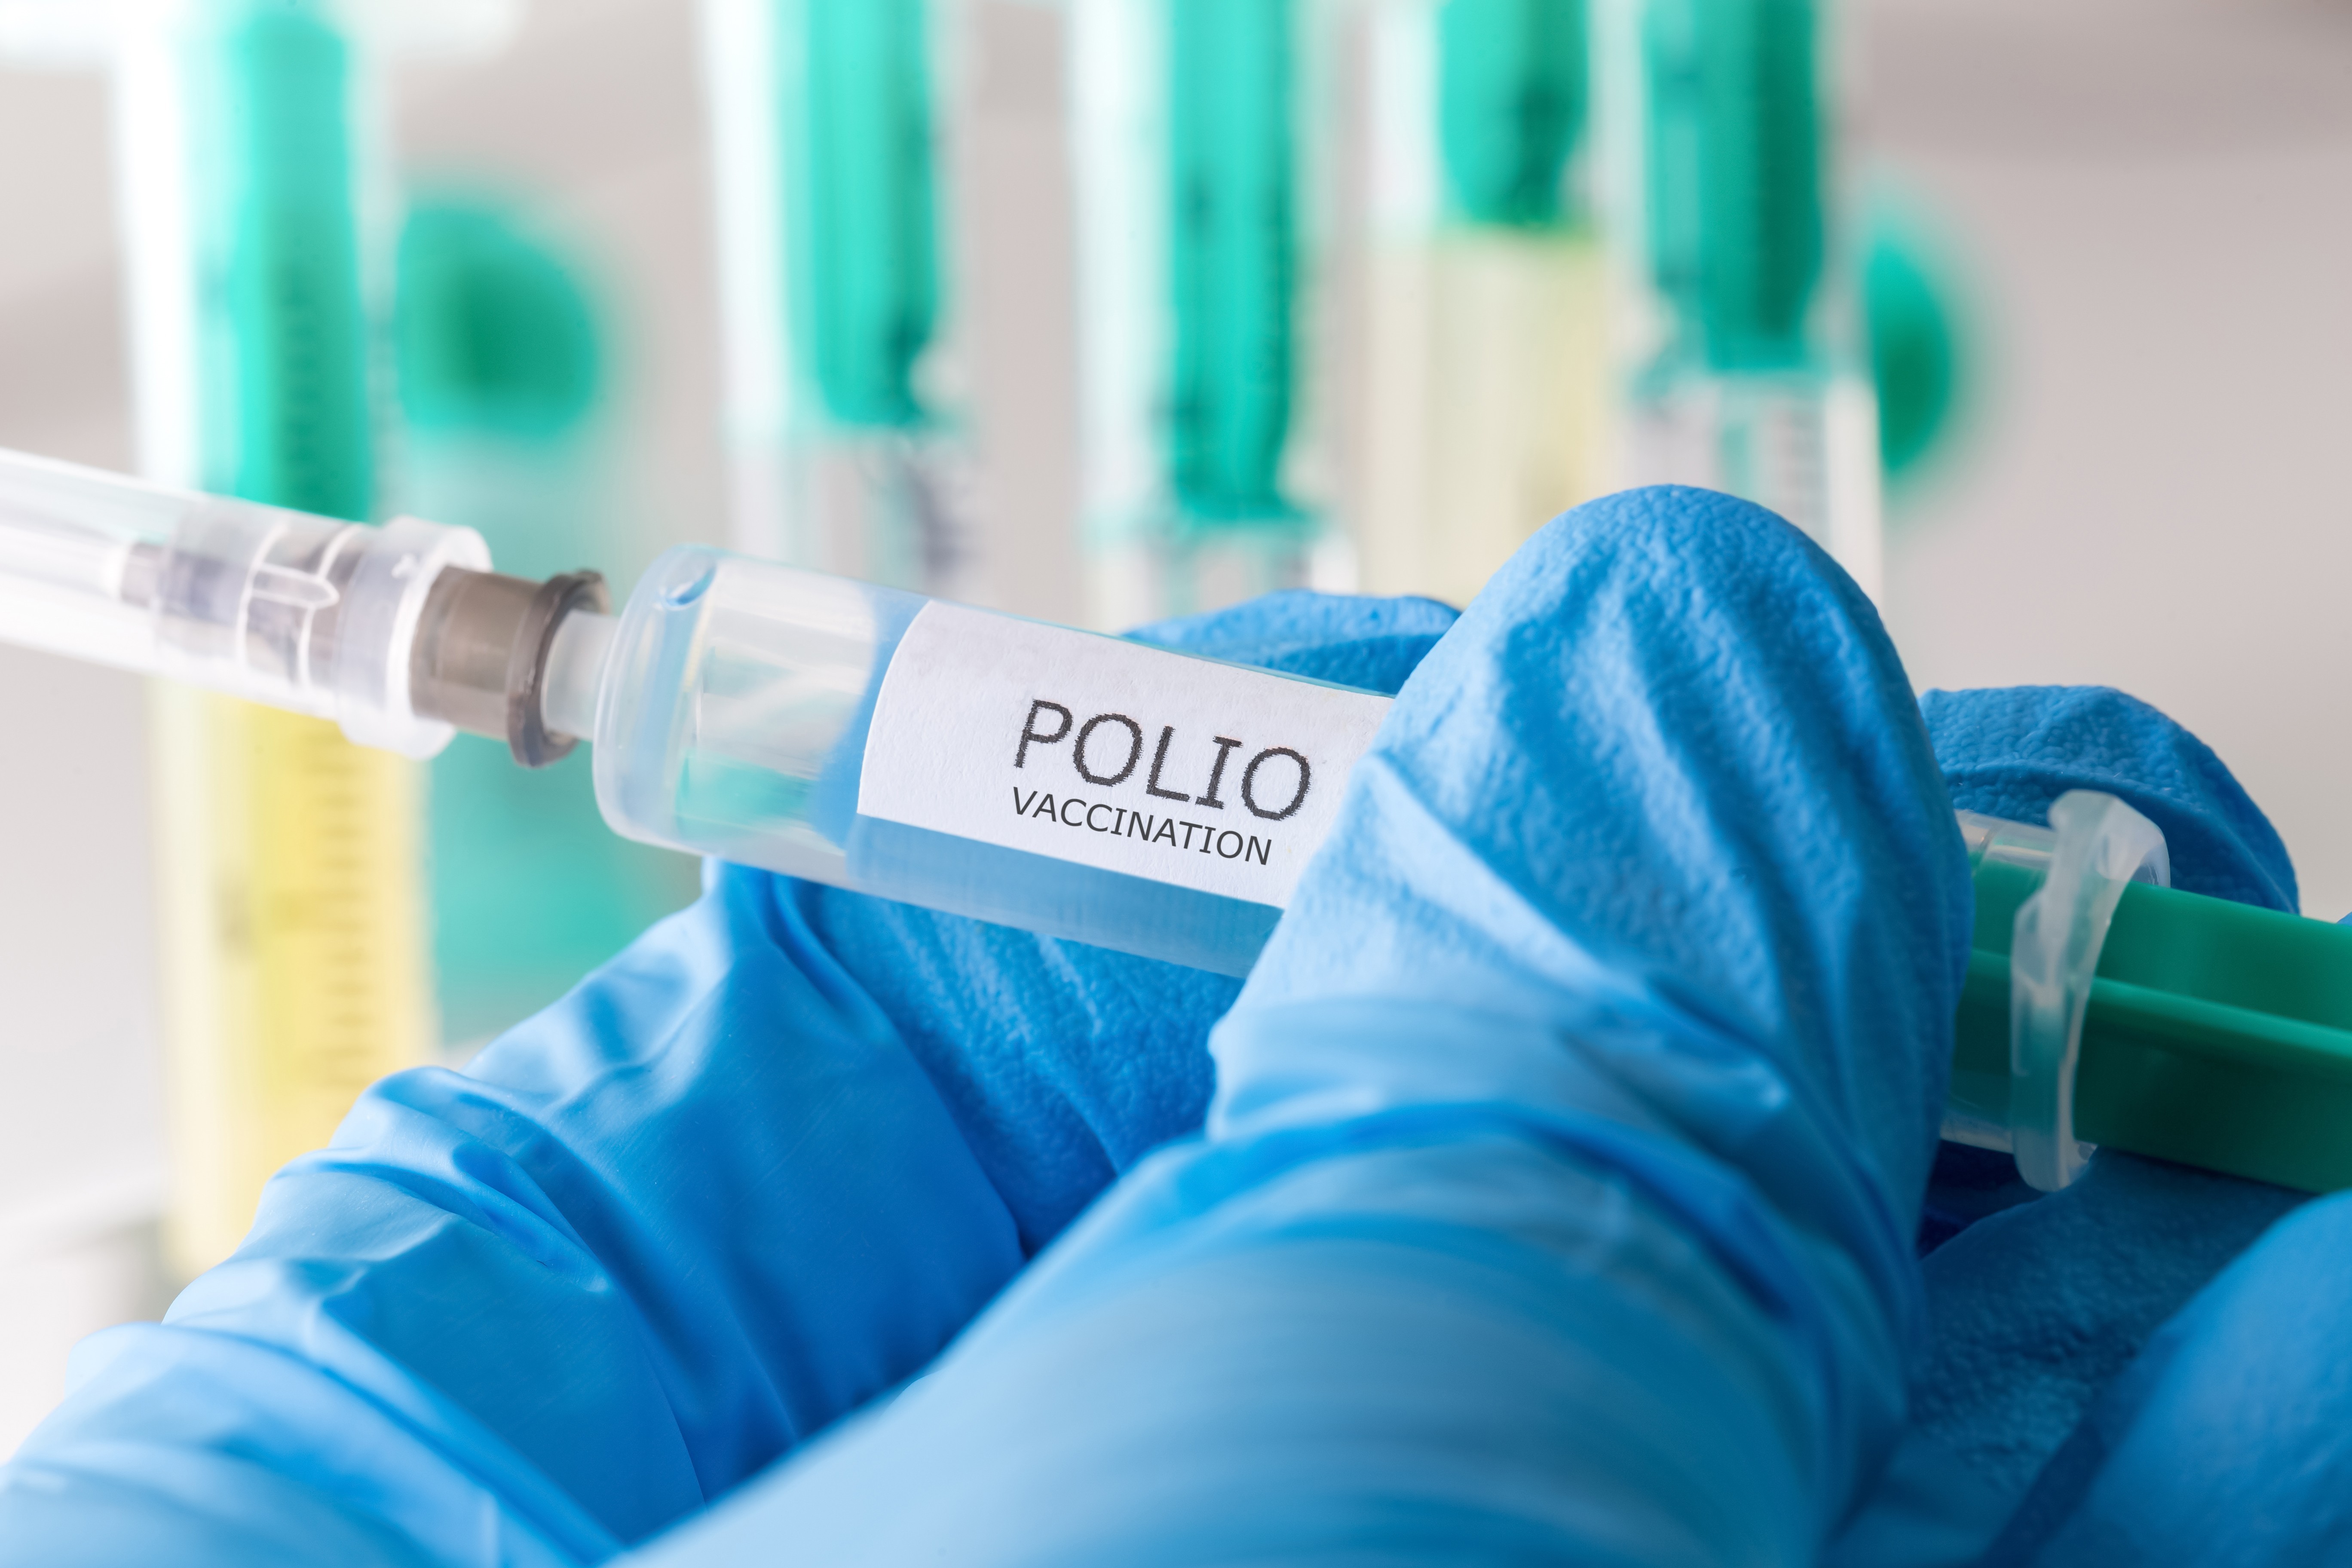 Детей, невакцинированных от полиомиелита, прививают инактивированной вакциной, она безопасна — педиатр